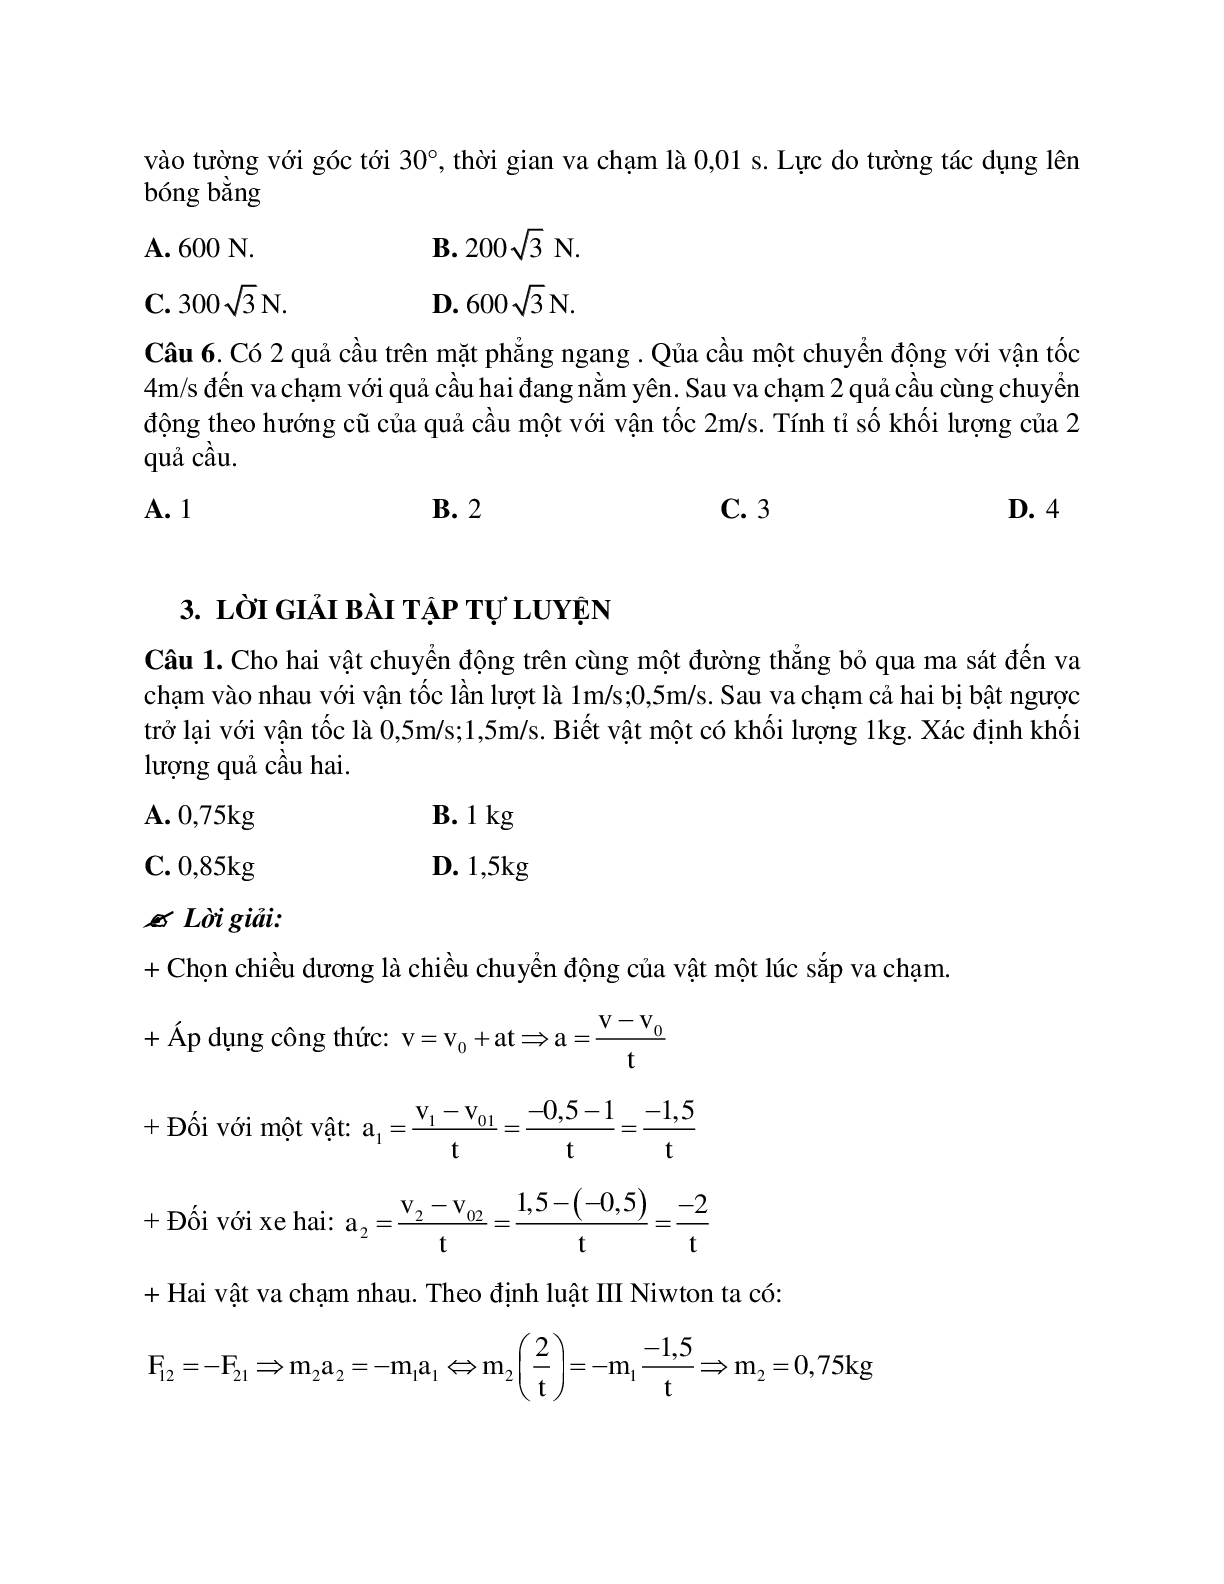 Phương pháp giải và bài tập về Bài toán hai vật va chạm nhau - định luật III Newton chọn lọc (trang 4)